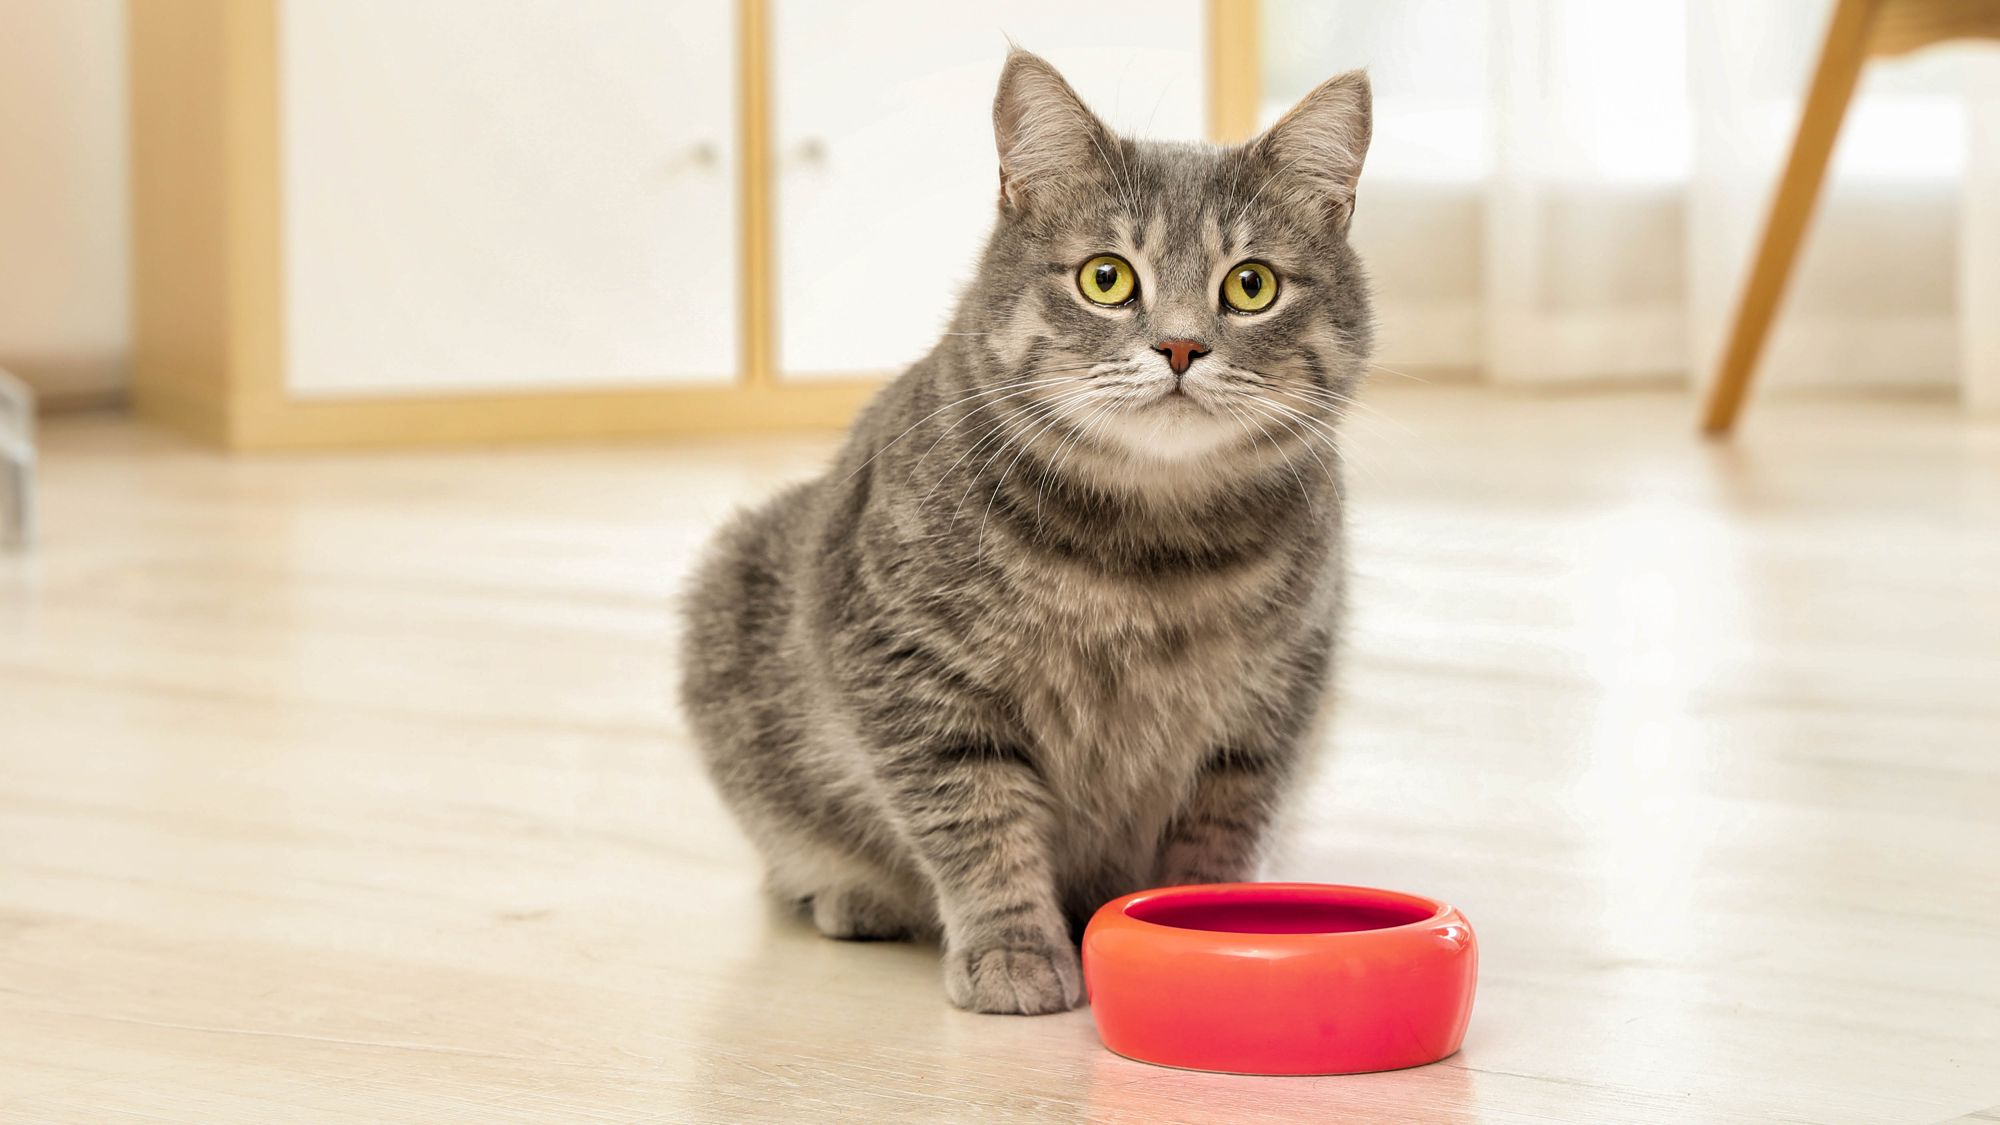 Cat with orange bowl